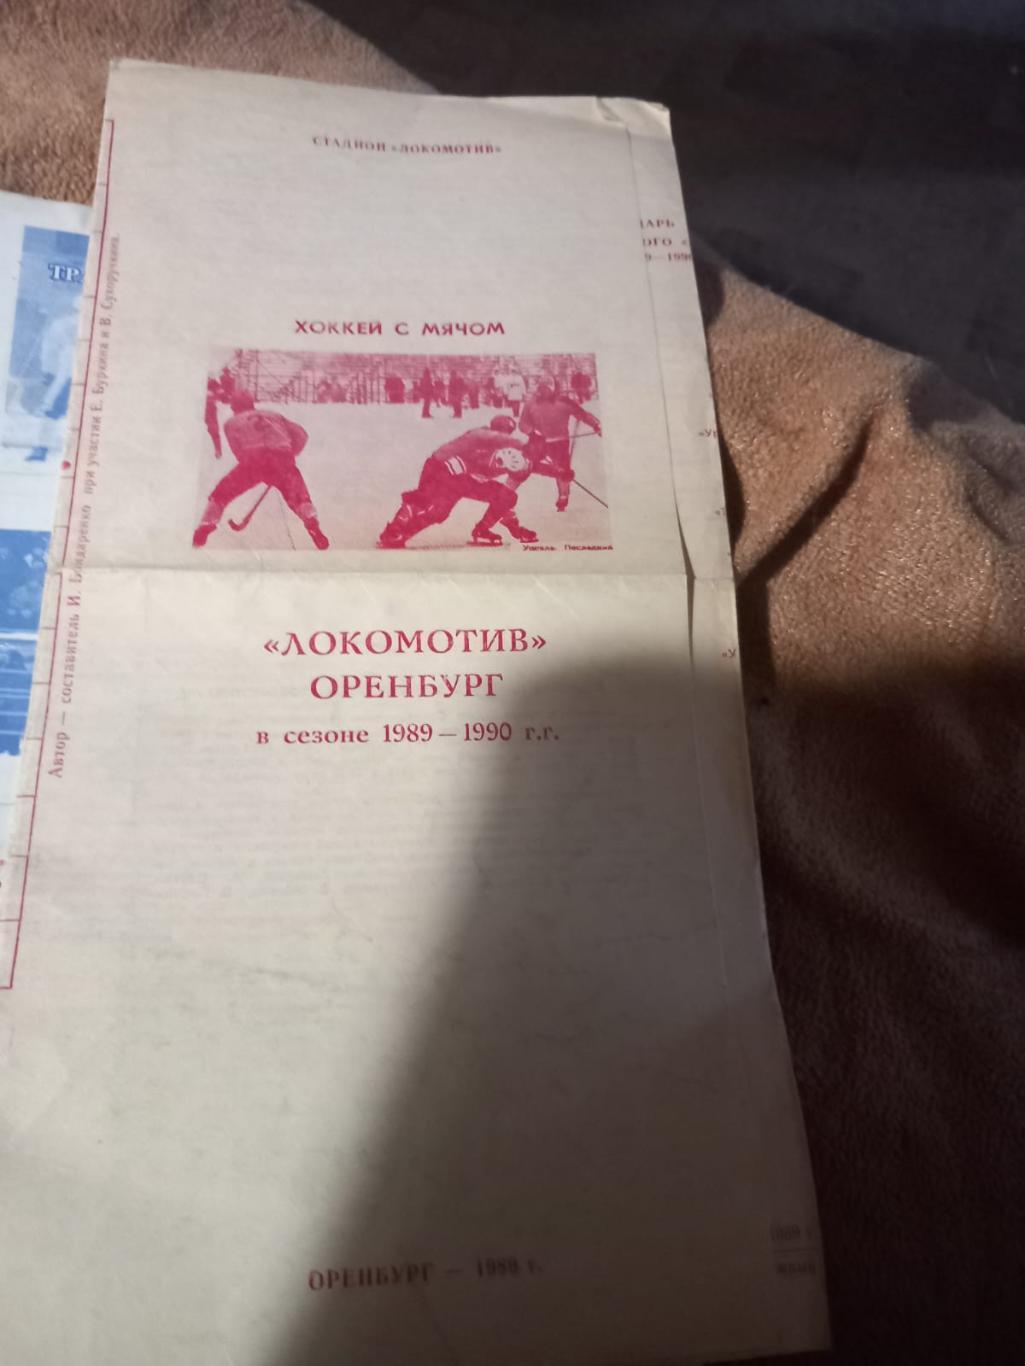 Буклет хоккей с мячом Локомотив Оренбург 1989/90